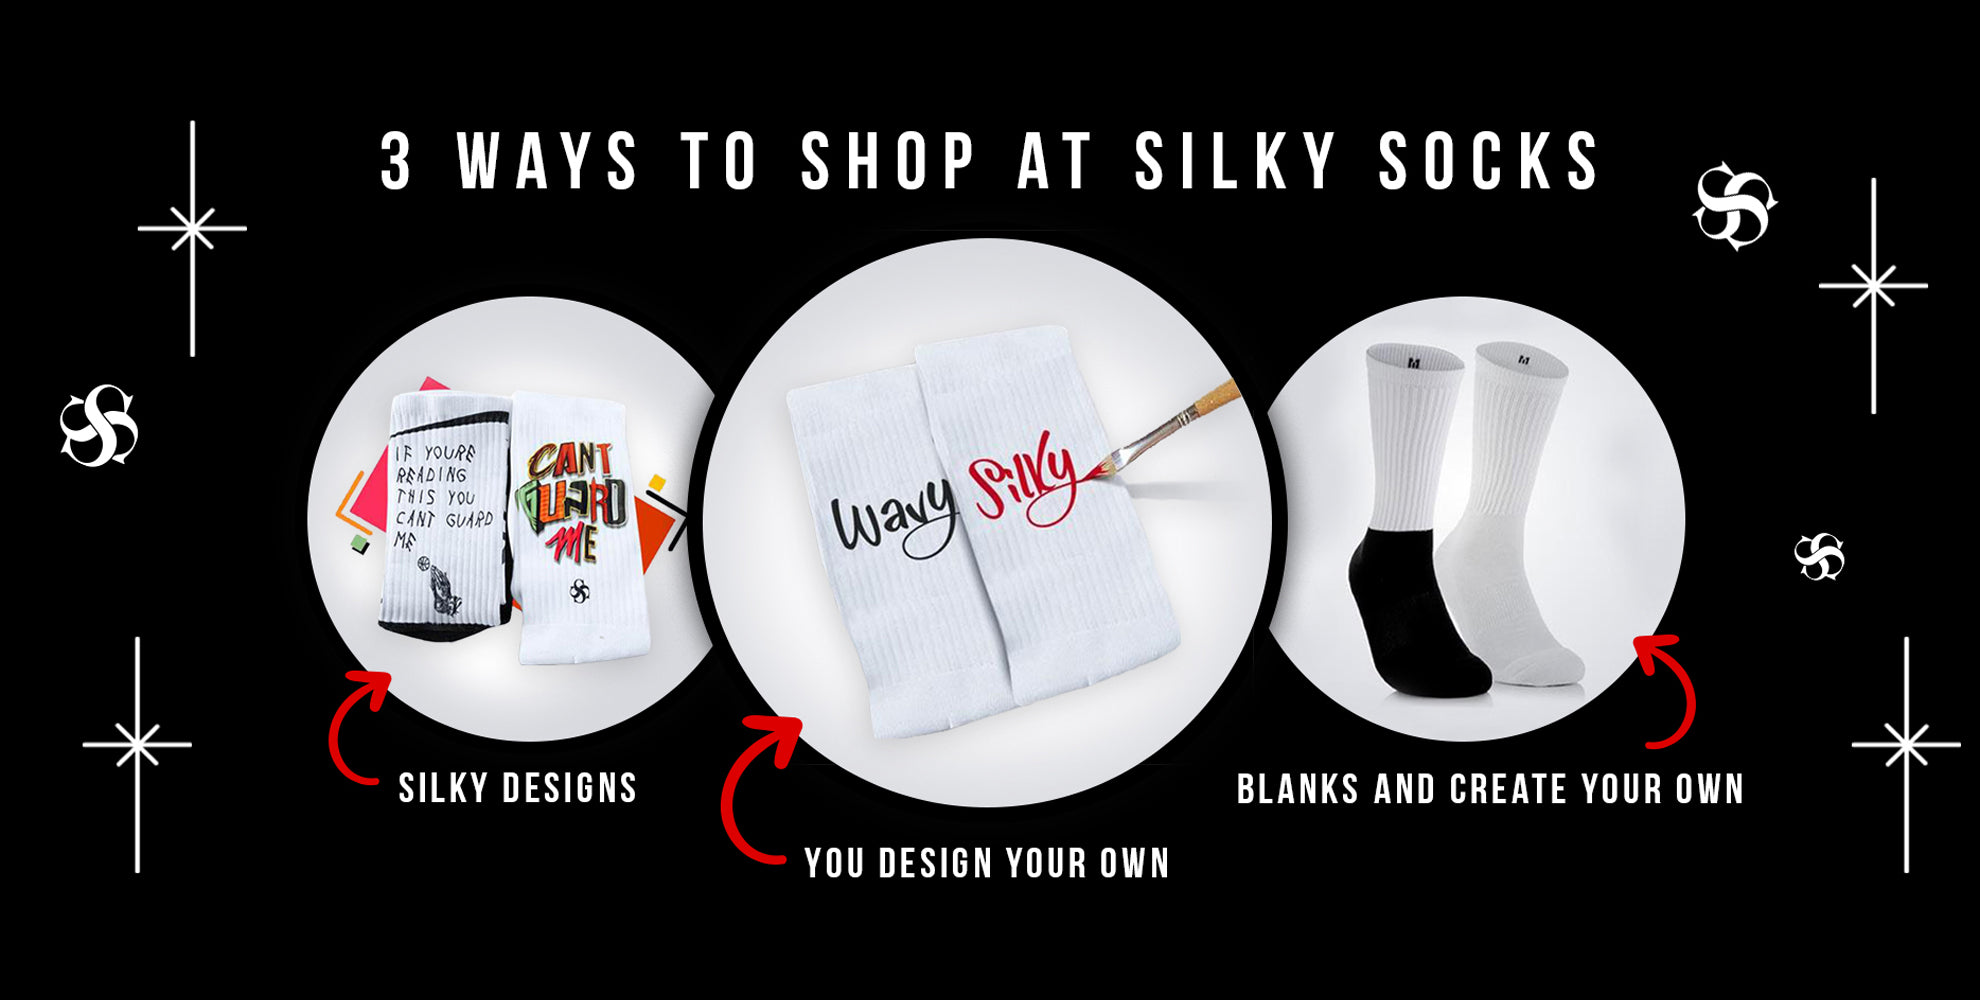 Blank Color N White Tees - Silky Socks